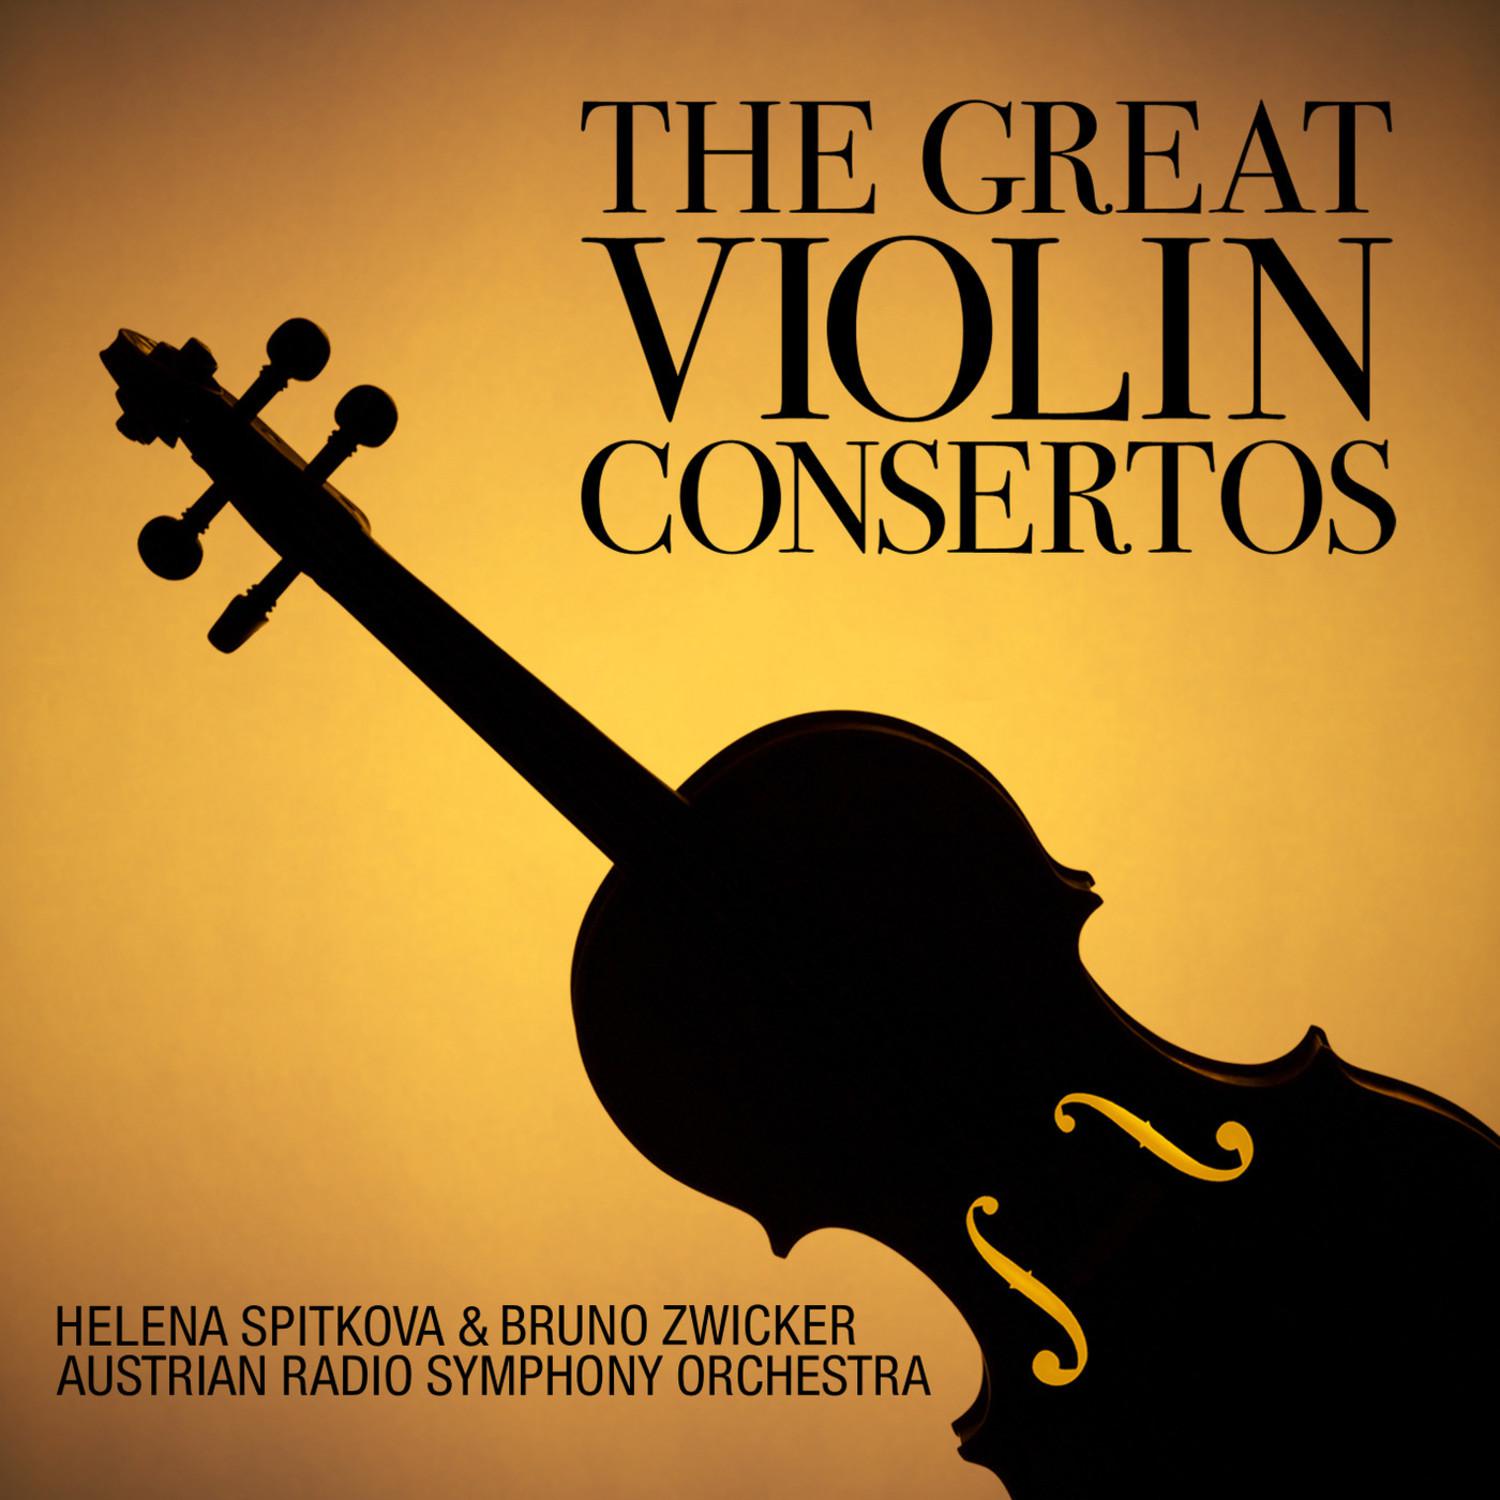 Concerto in D Minor for Violin and Orchestra, Op. 47: II. Adagio di molto